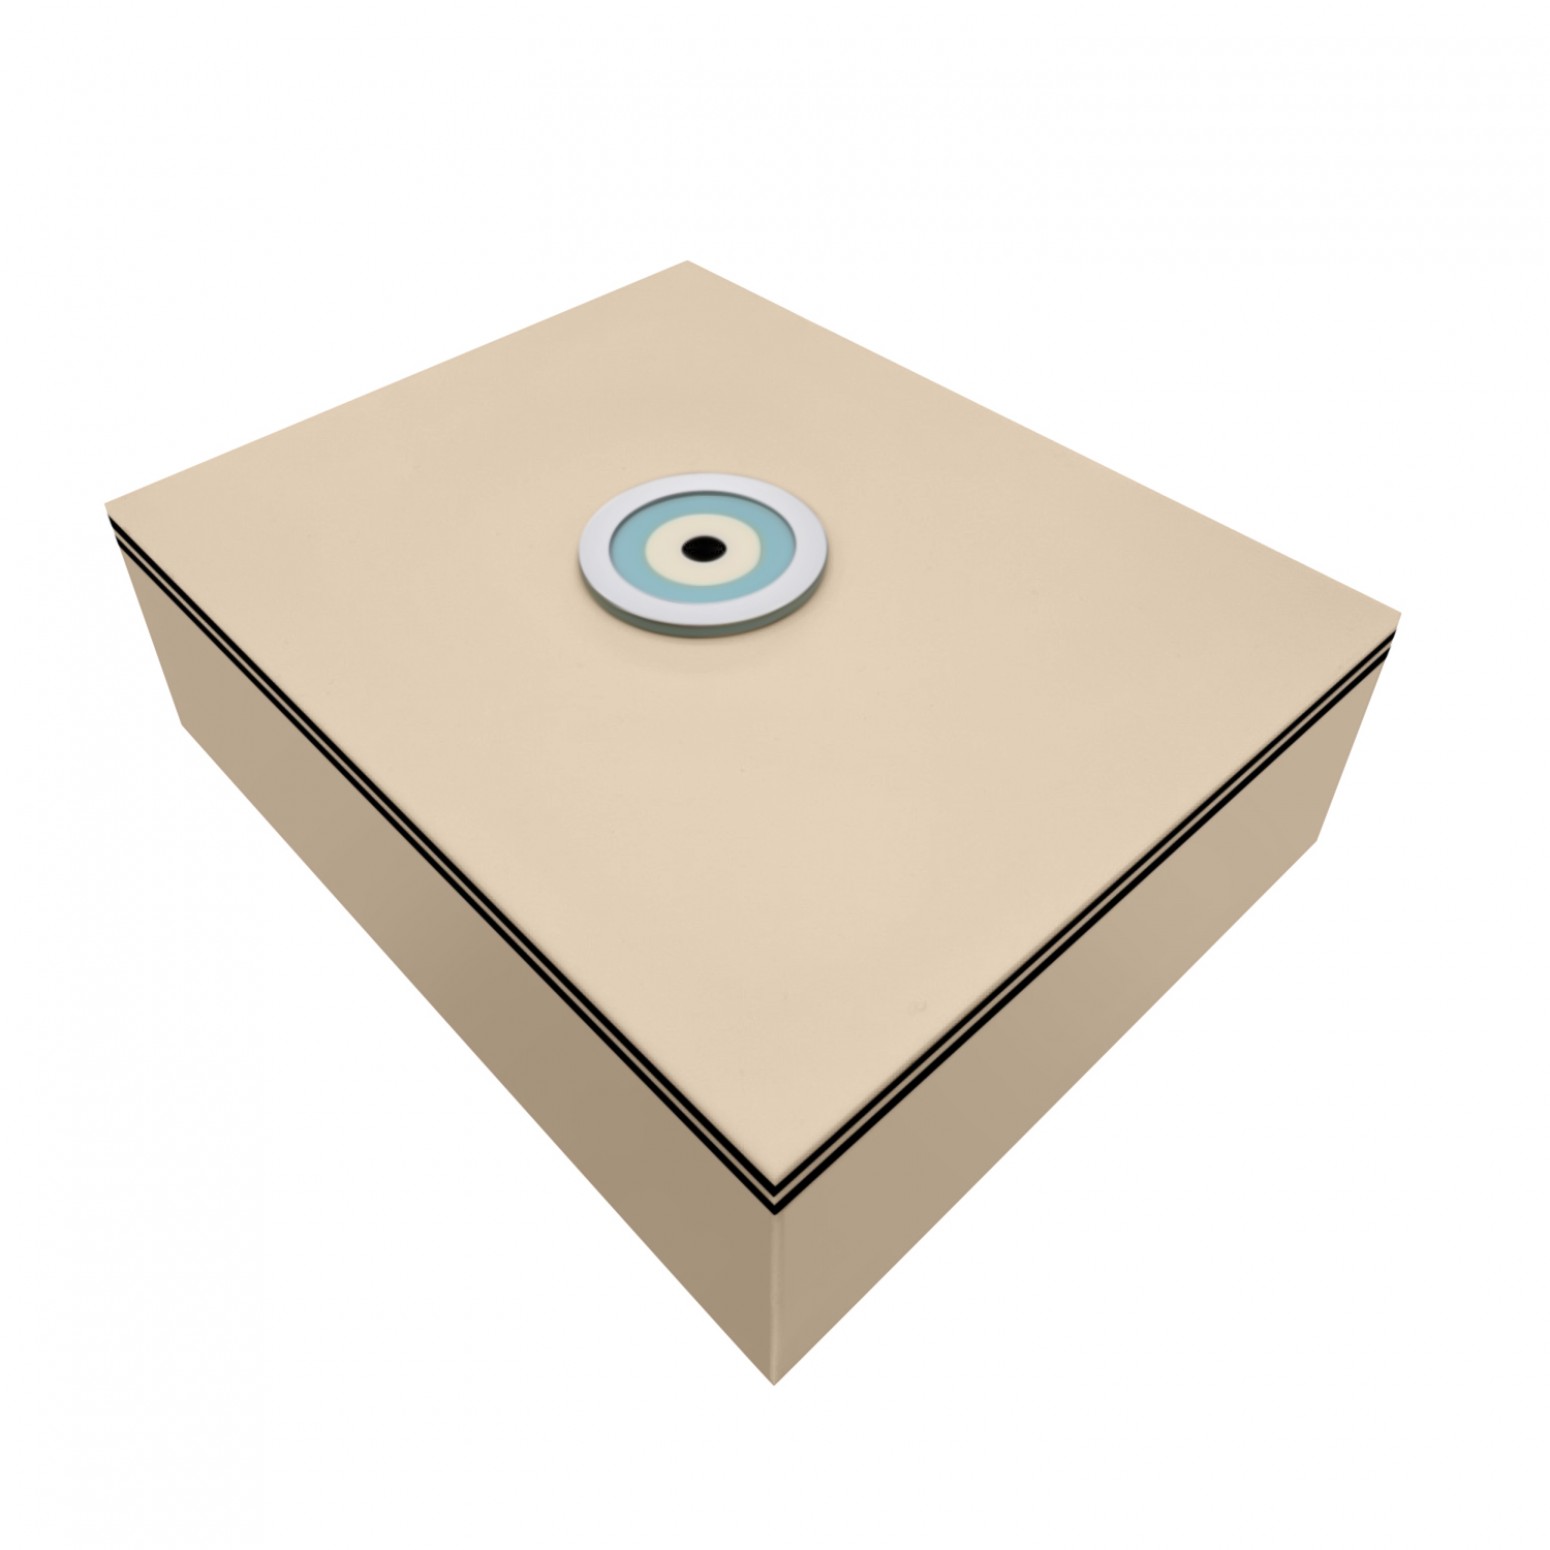 Κουτί πλεξιγκλάς μπεζ ματ με κόριαν μάτι και ίνοξ 25 x 20 x 8cm, ac1669 ΔΩΡΑ Κοσμηματα - chrilia.gr